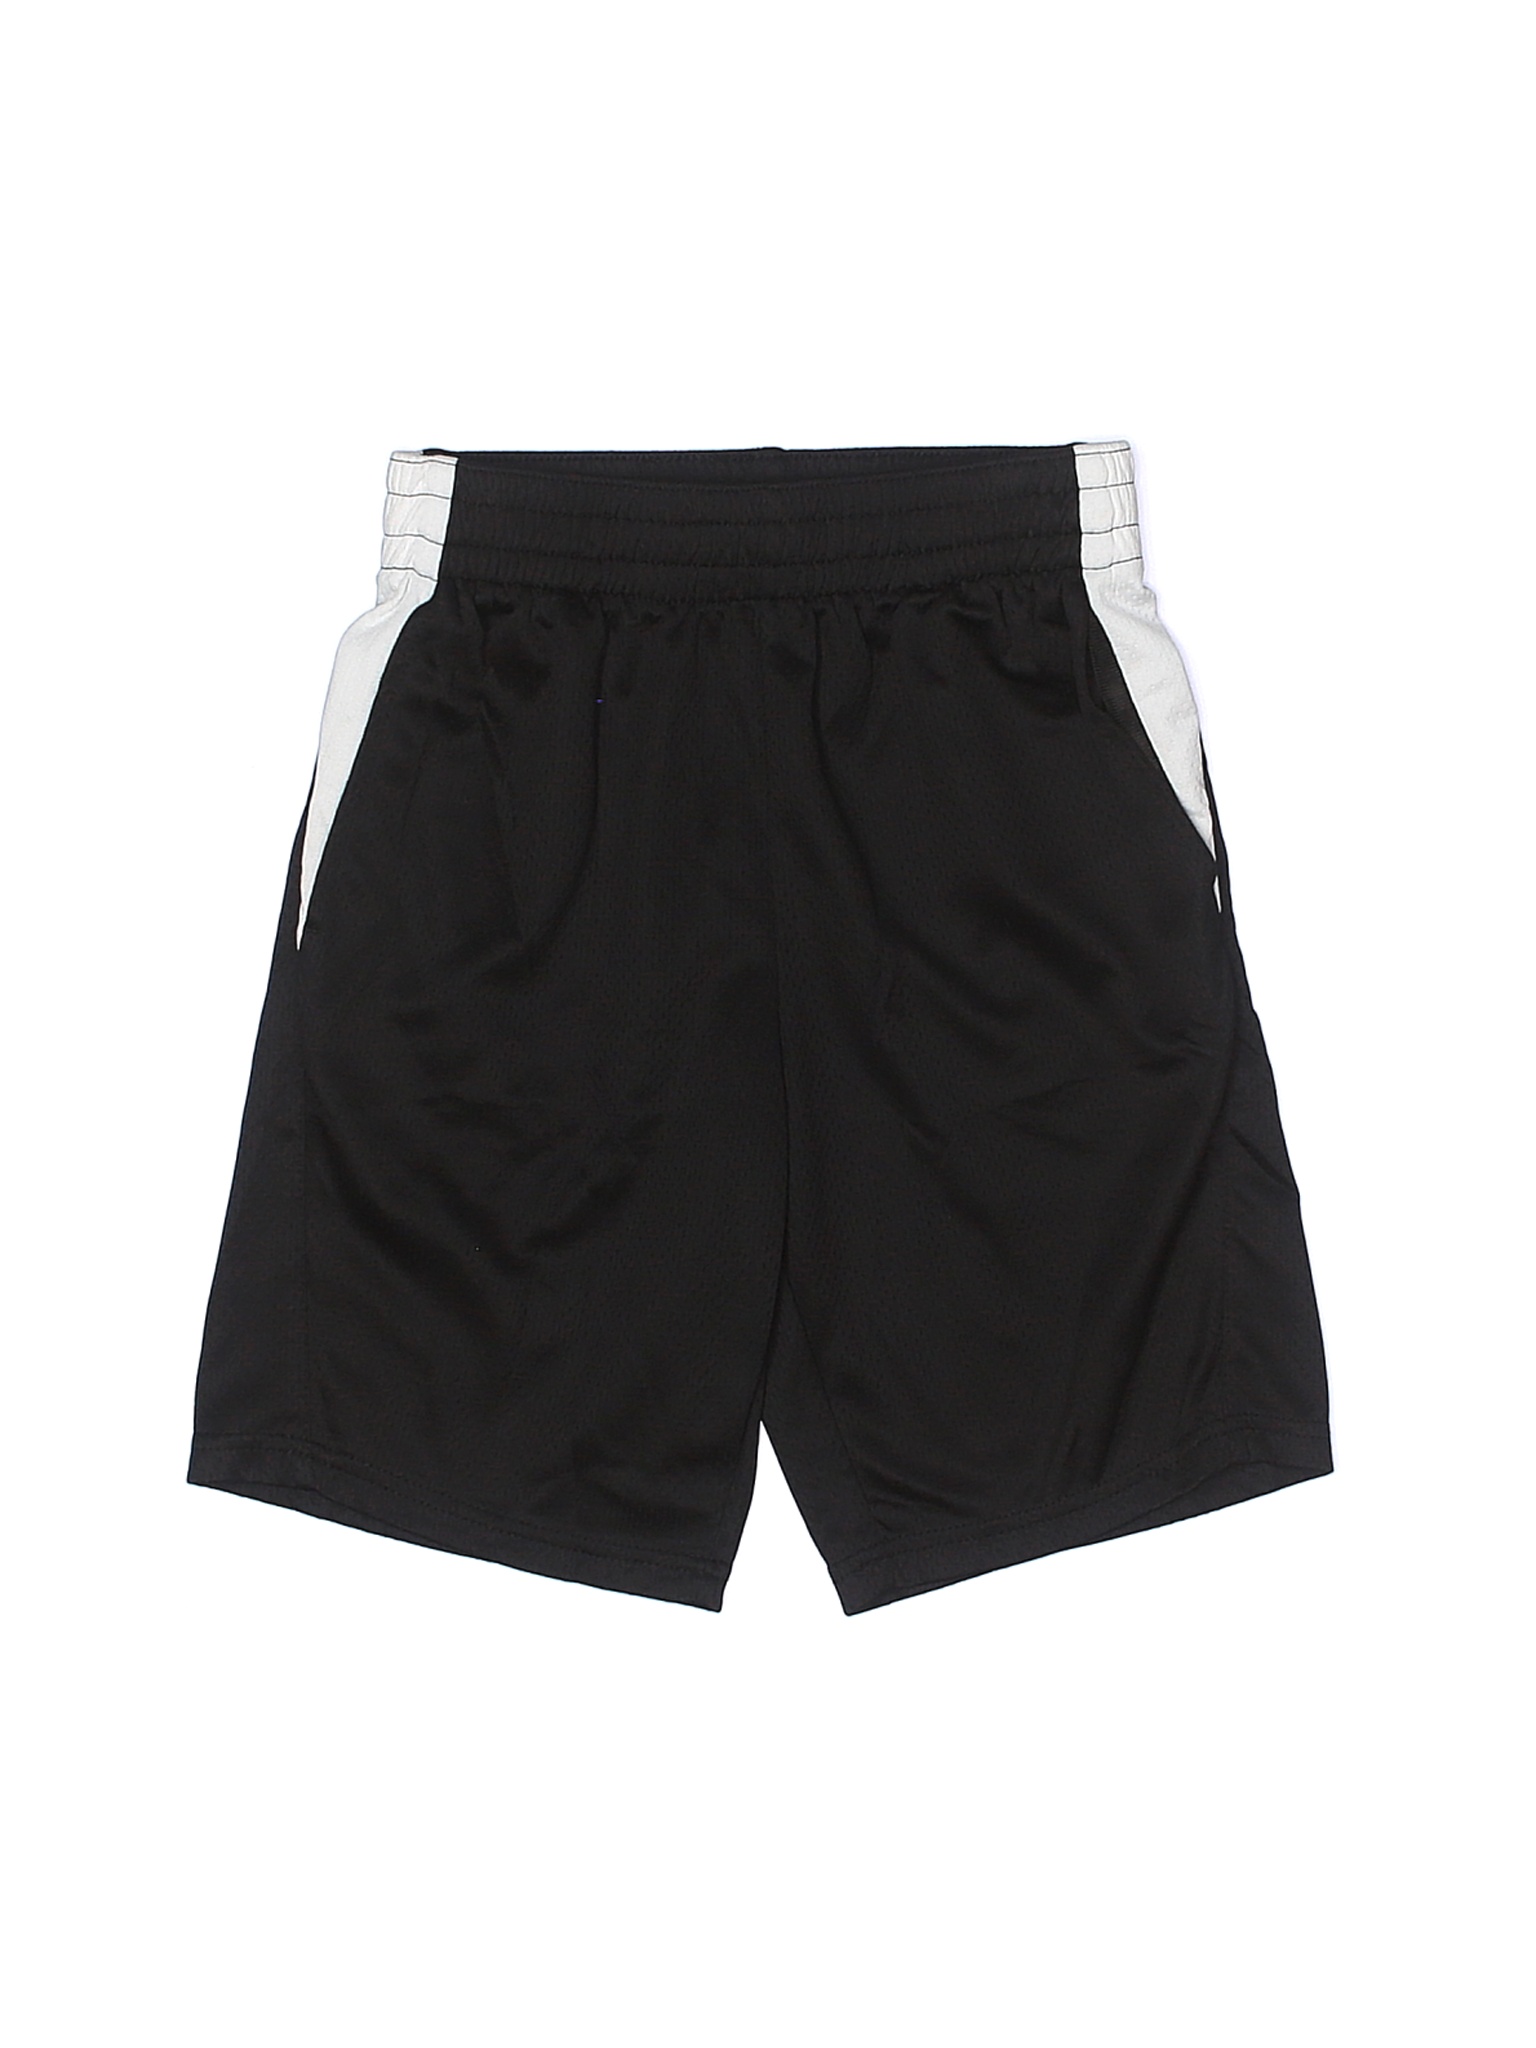 Athletic Works Boys Black Athletic Shorts 12 | eBay